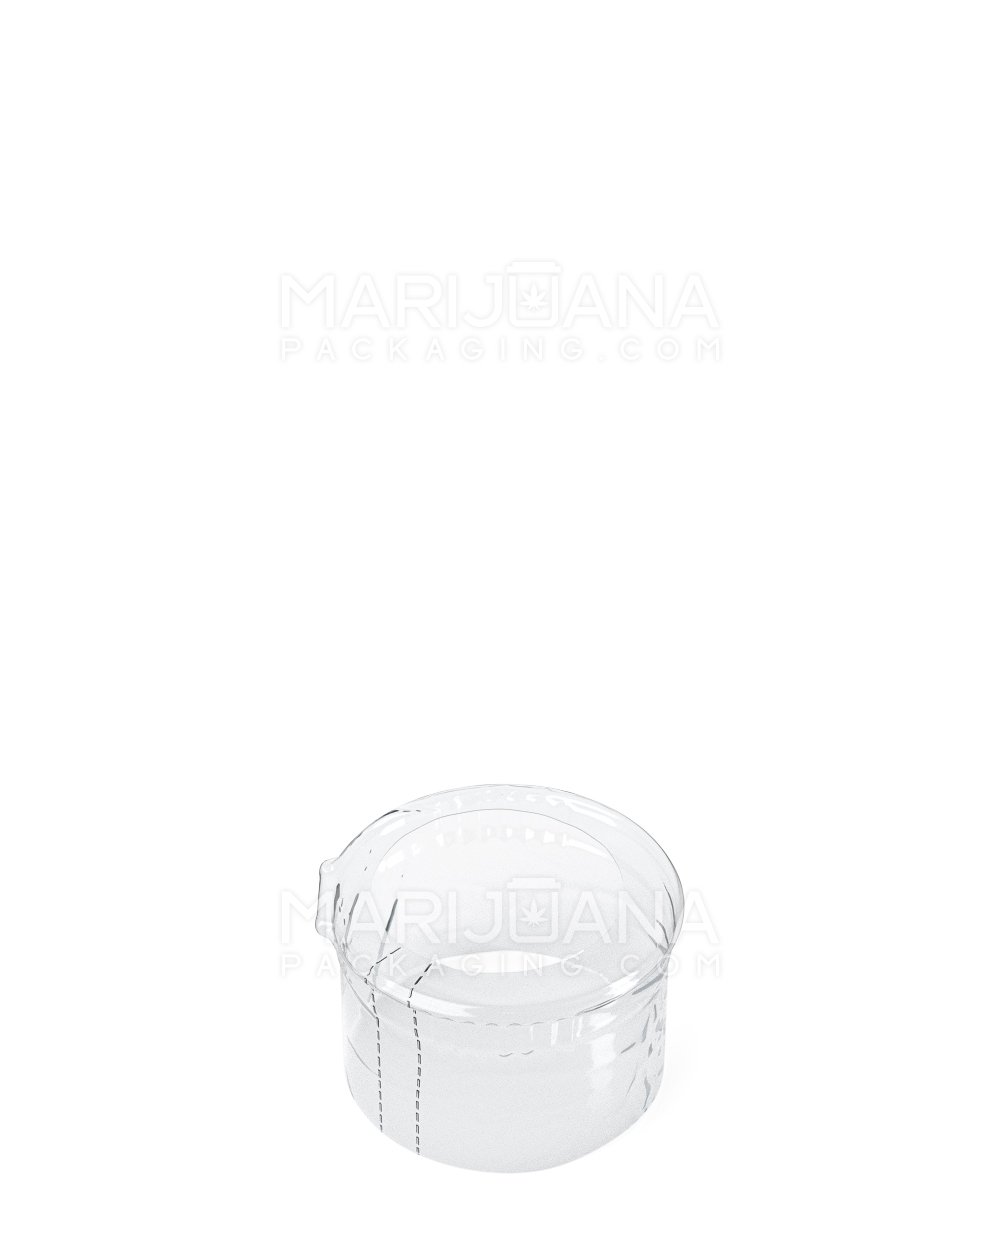 Tamper Evident | Heat Shrink Bands for Pop Top Bottles | 19dr- Clear Plastic - 1000 Count - 1